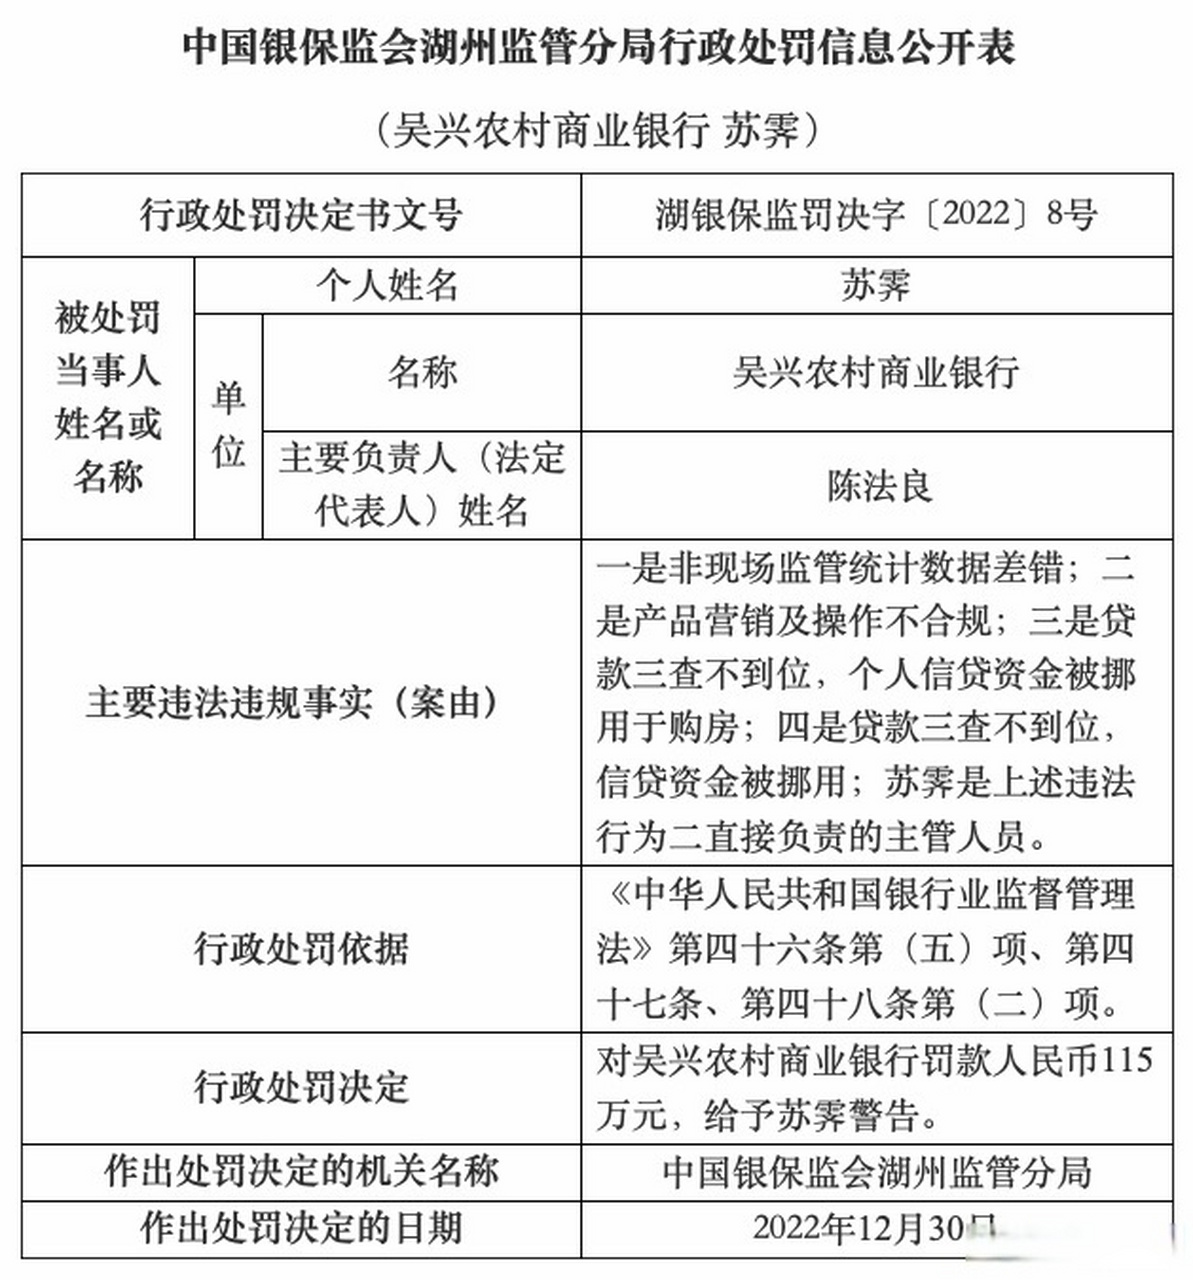 中国银保监会湖州监管分局行政处罚信息公开表显示,2022年12月30日